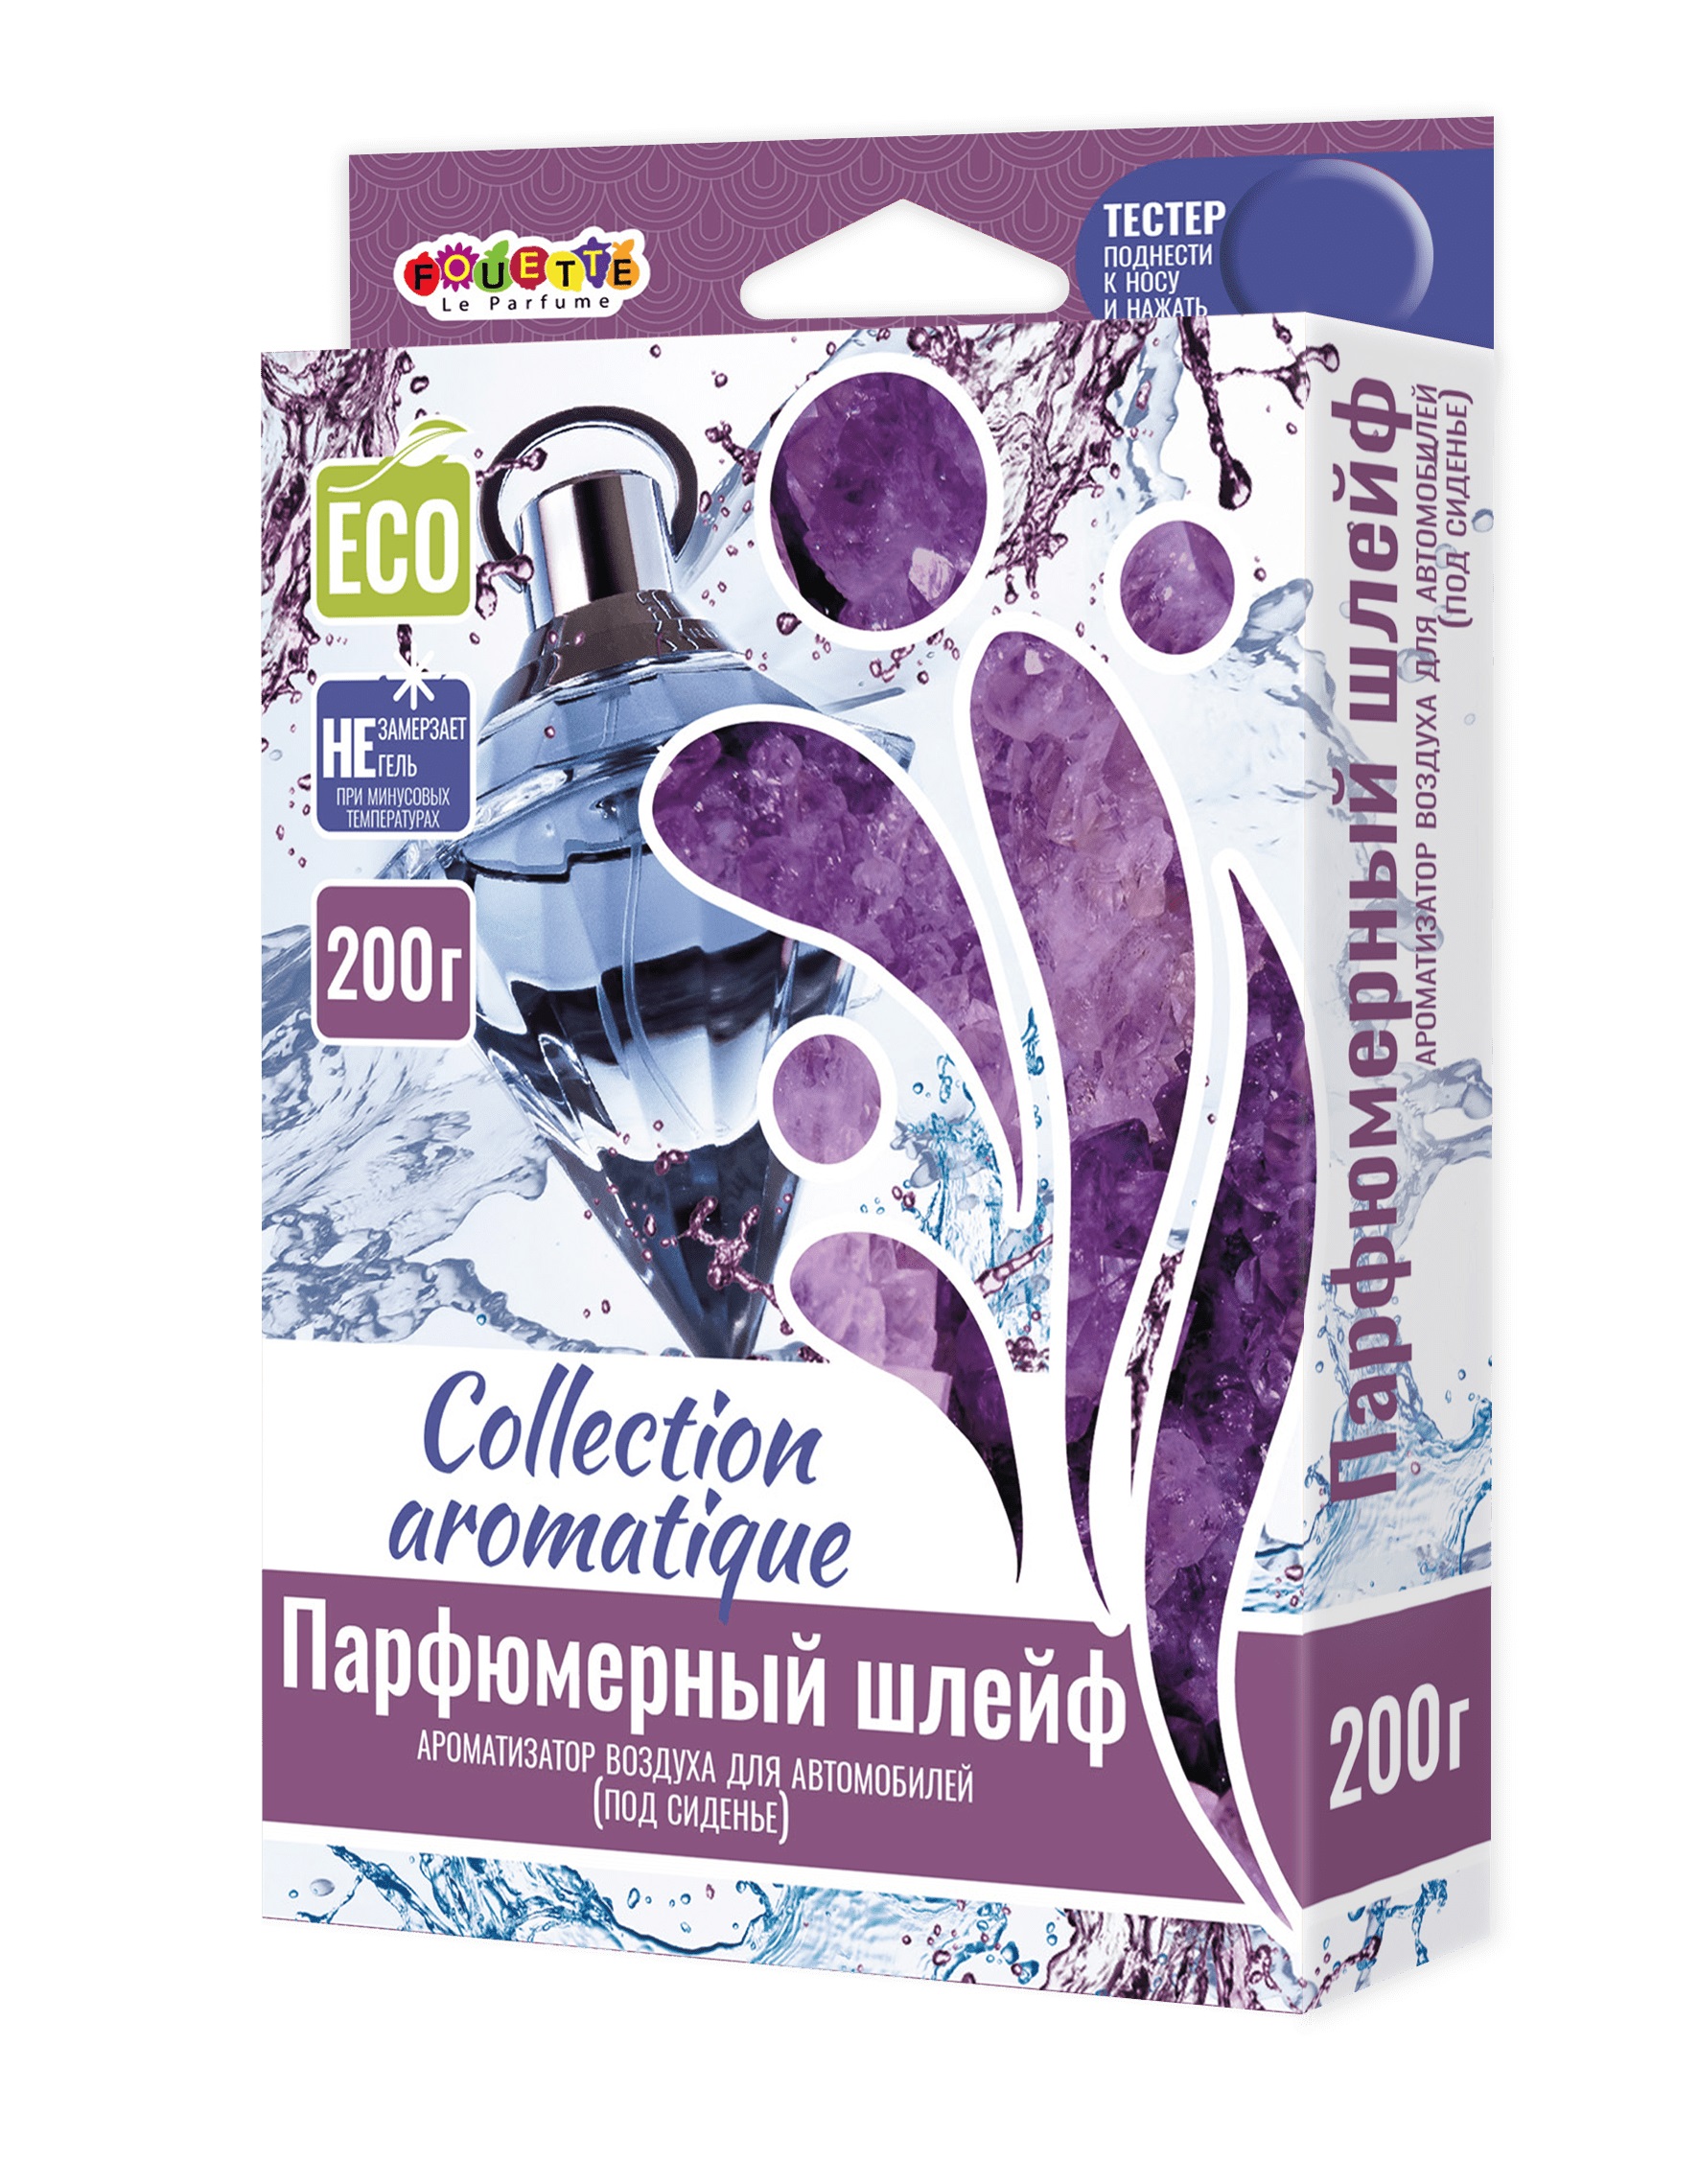    Collection Aromatigue (200)  